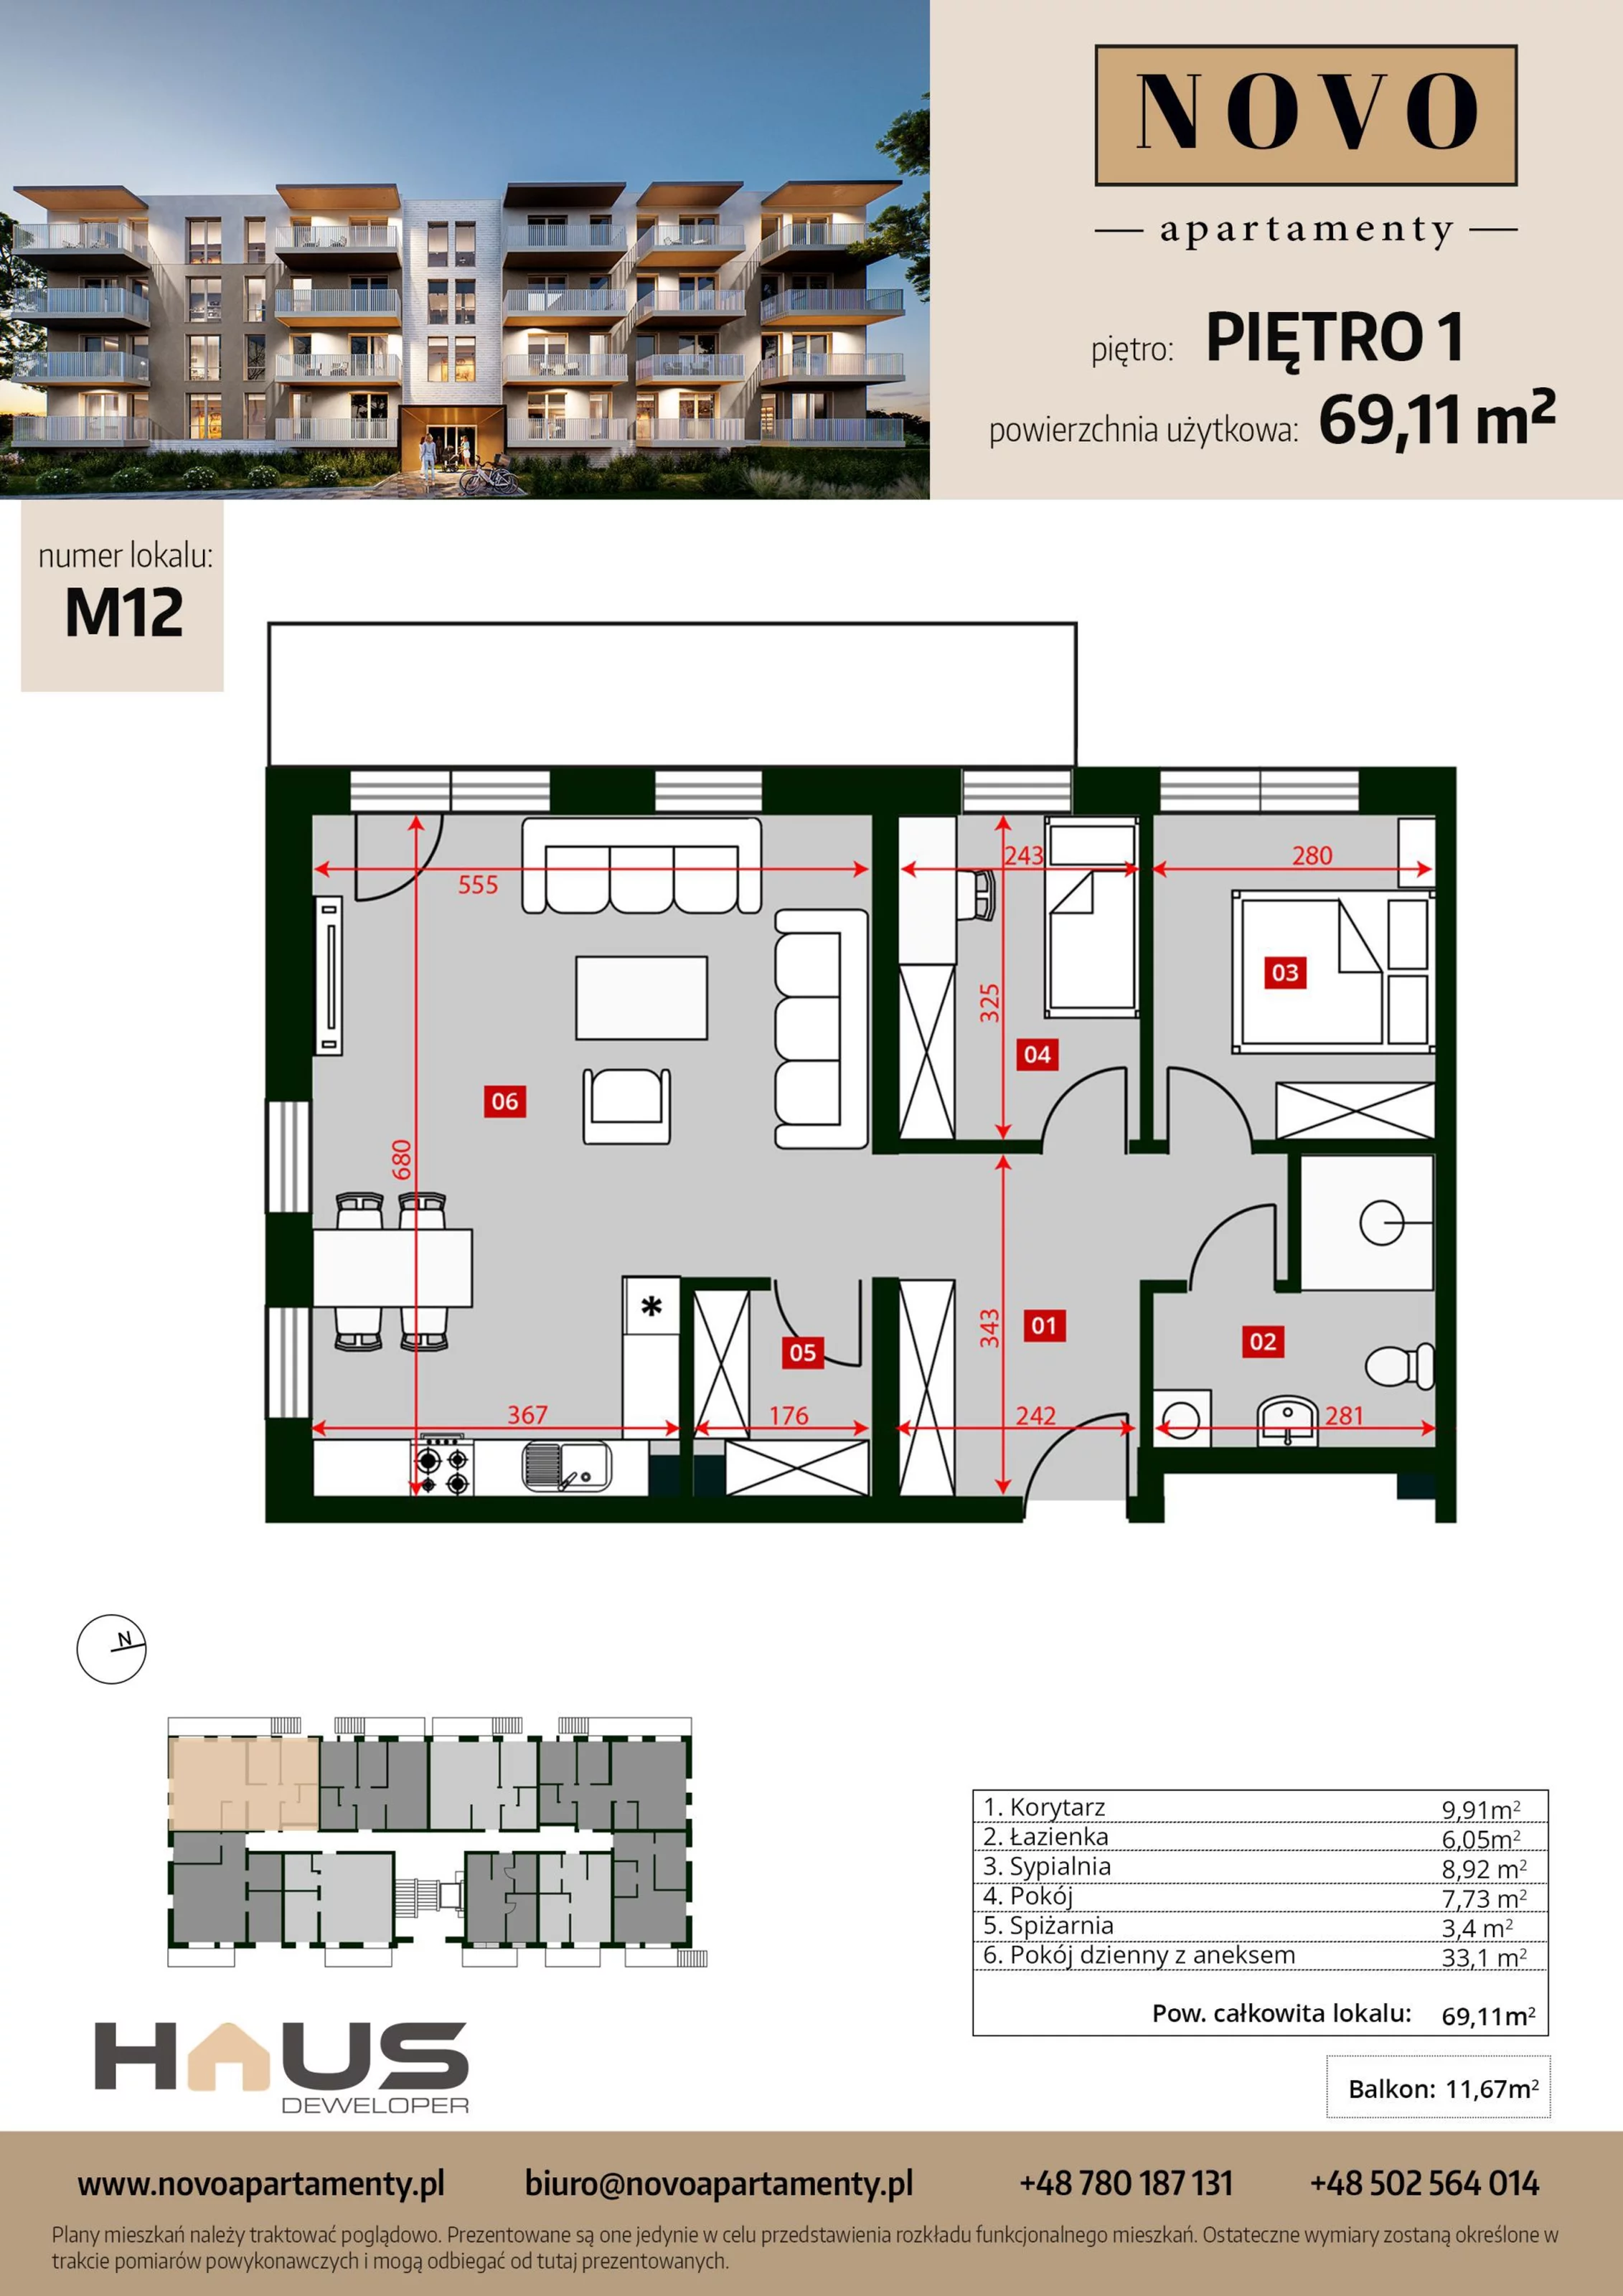 Mieszkanie 69,11 m², piętro 1, oferta nr M12, Apartamenty NOVO, Nysa, ul. Franciszkańska